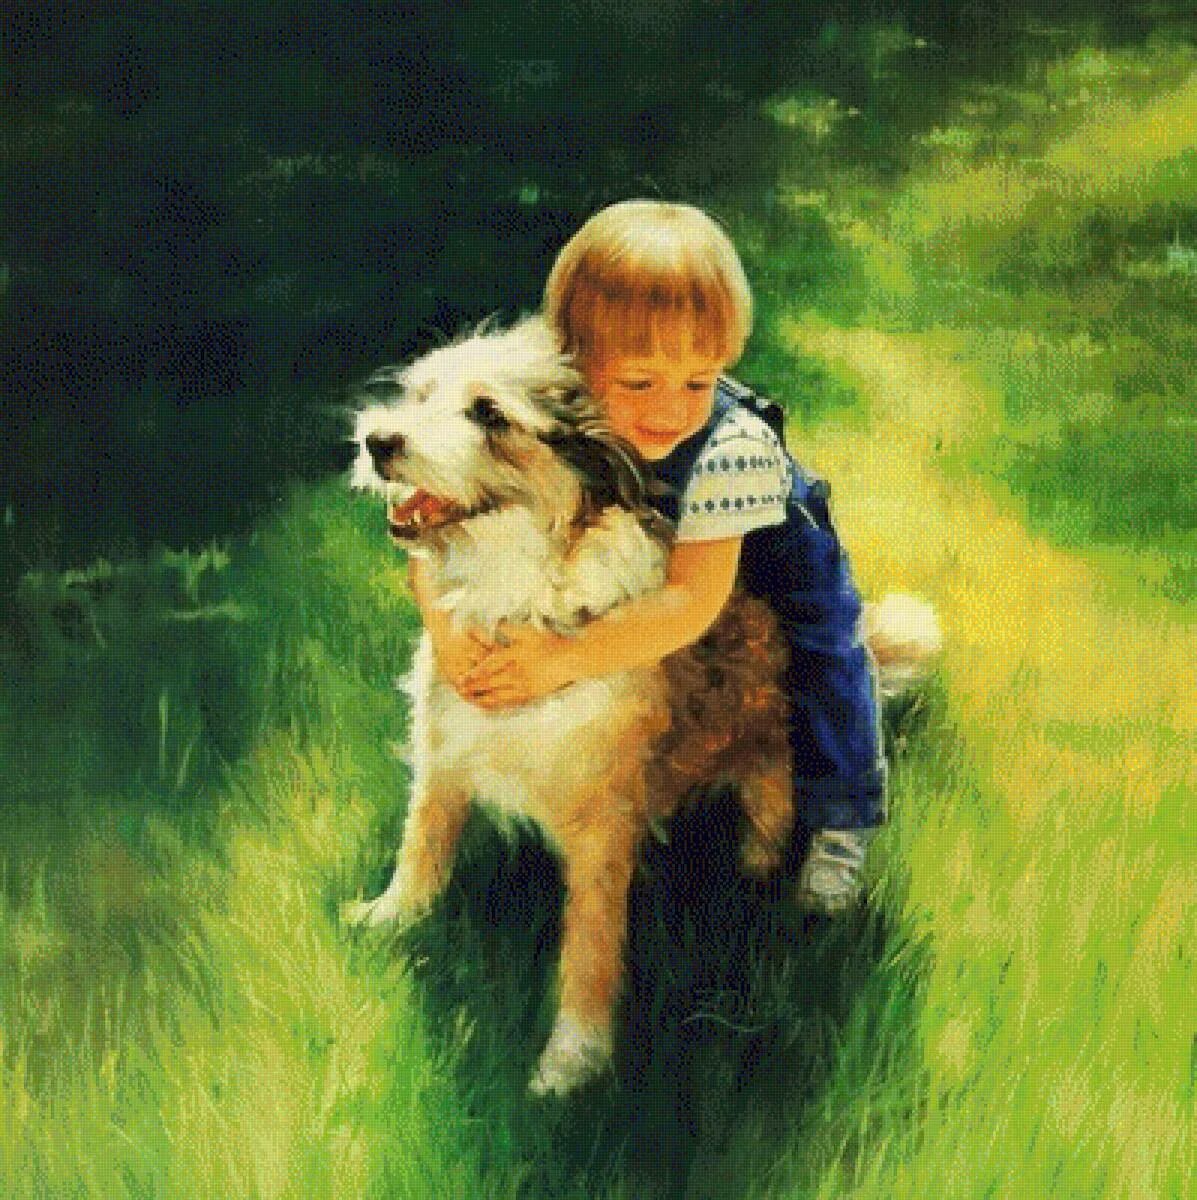 Мальчик играющий с собакой. Художник Дональдо золано.